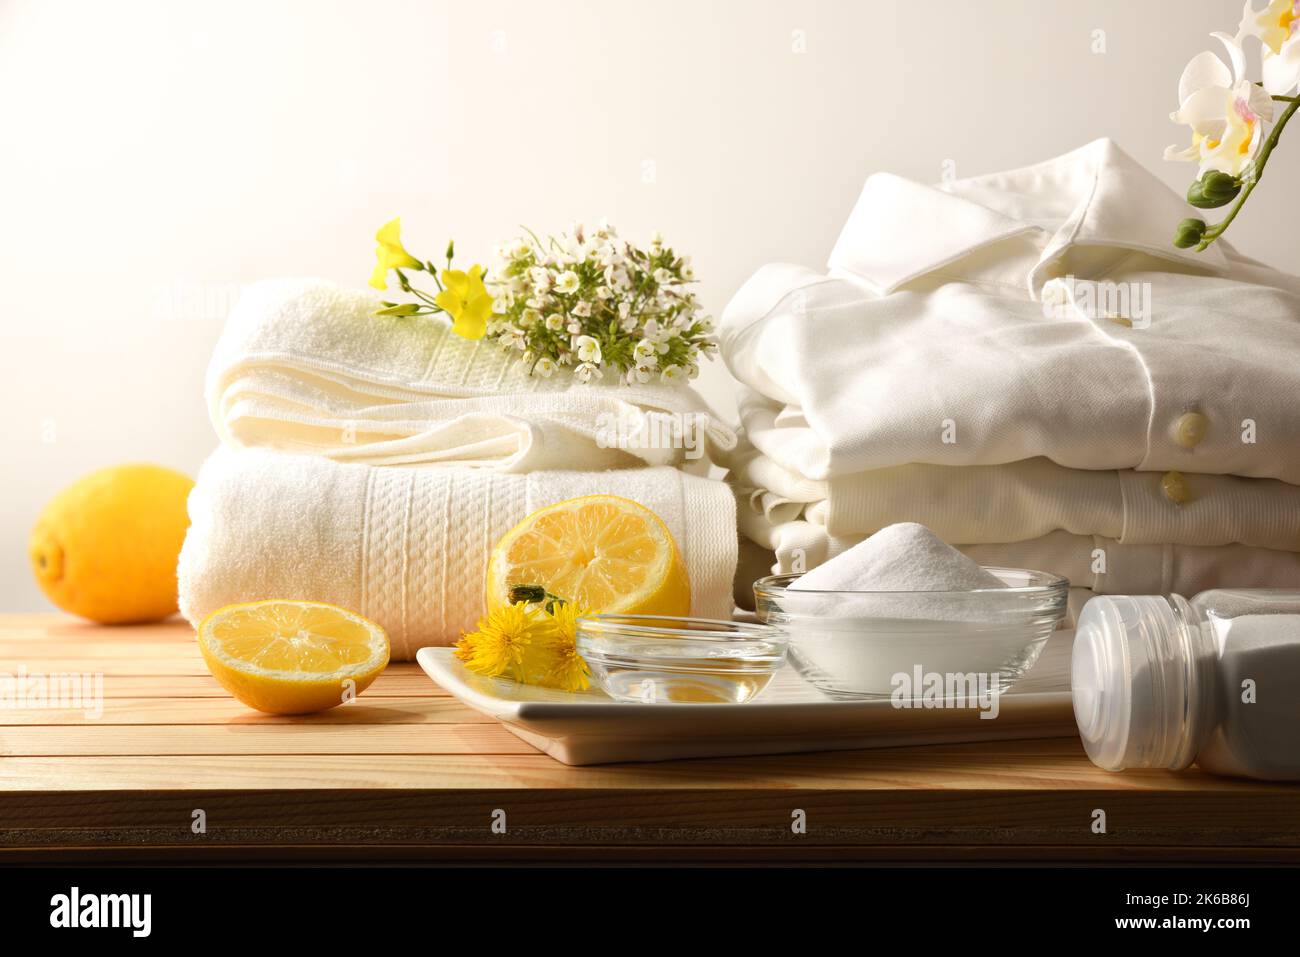 Rimedio domestico per lavare i vestiti in modo sostenibile e naturale con limone, bicarbonato e aceto con i vestiti su un tavolo di legno. Vista dall'alto. Orizzonte Foto Stock